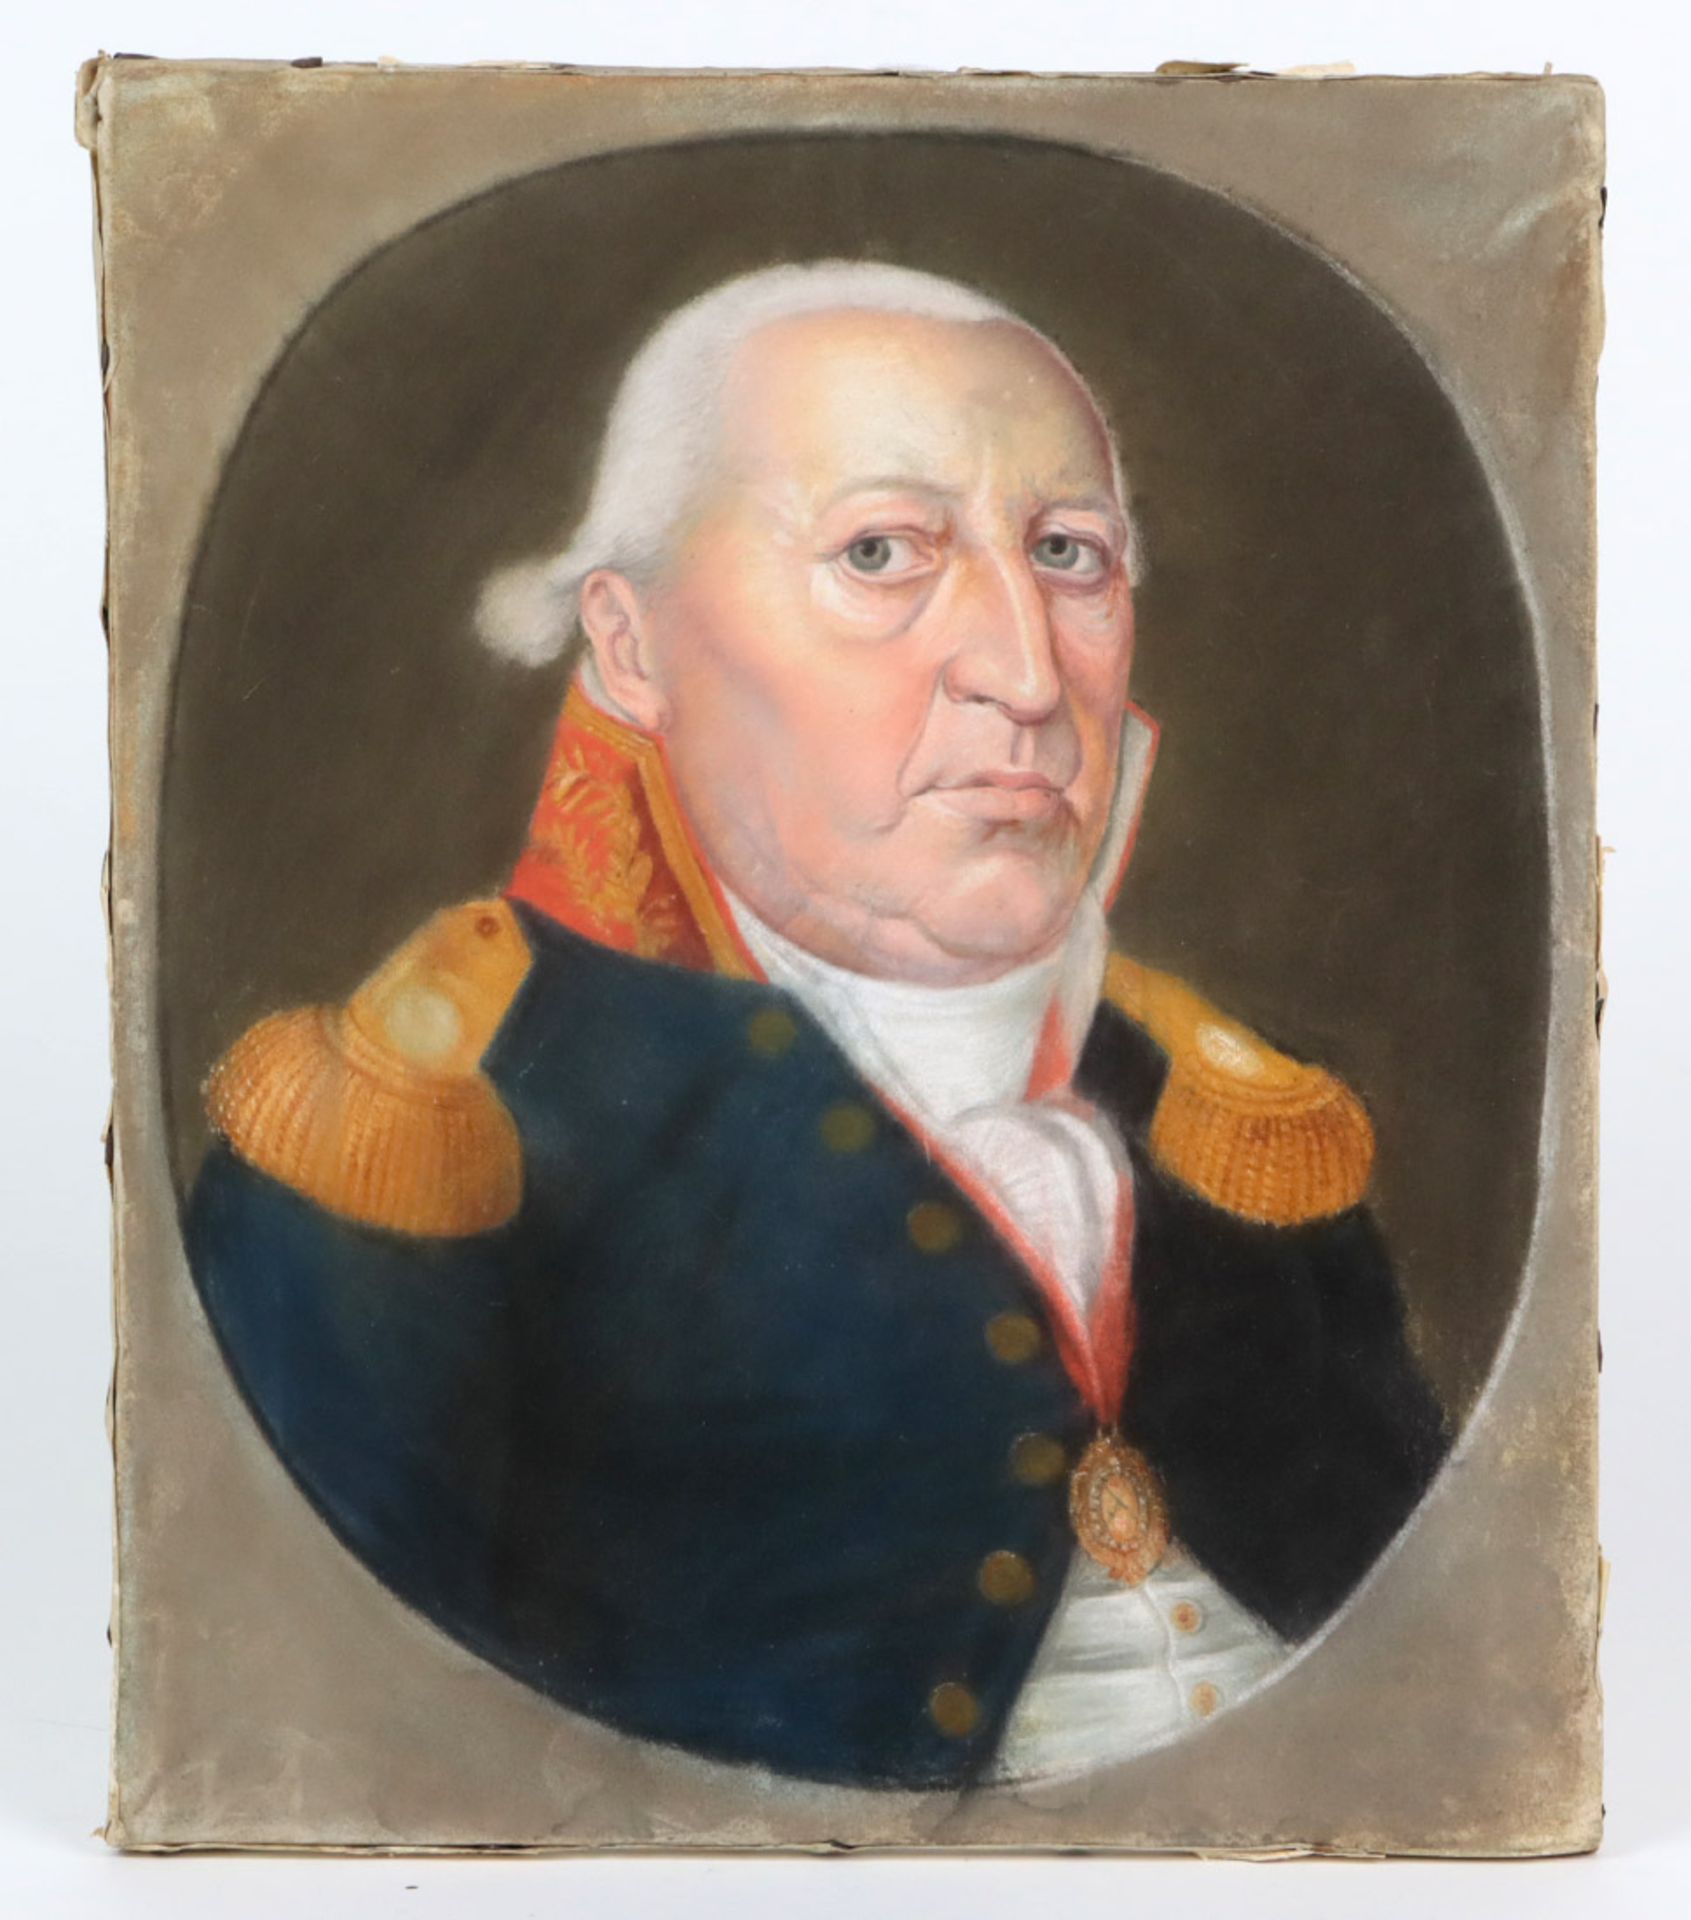 Biedermeier Herrenportrait 1810Pastell umseitig signiert F. Carri sowie *fecit 1810*, hochformatiges